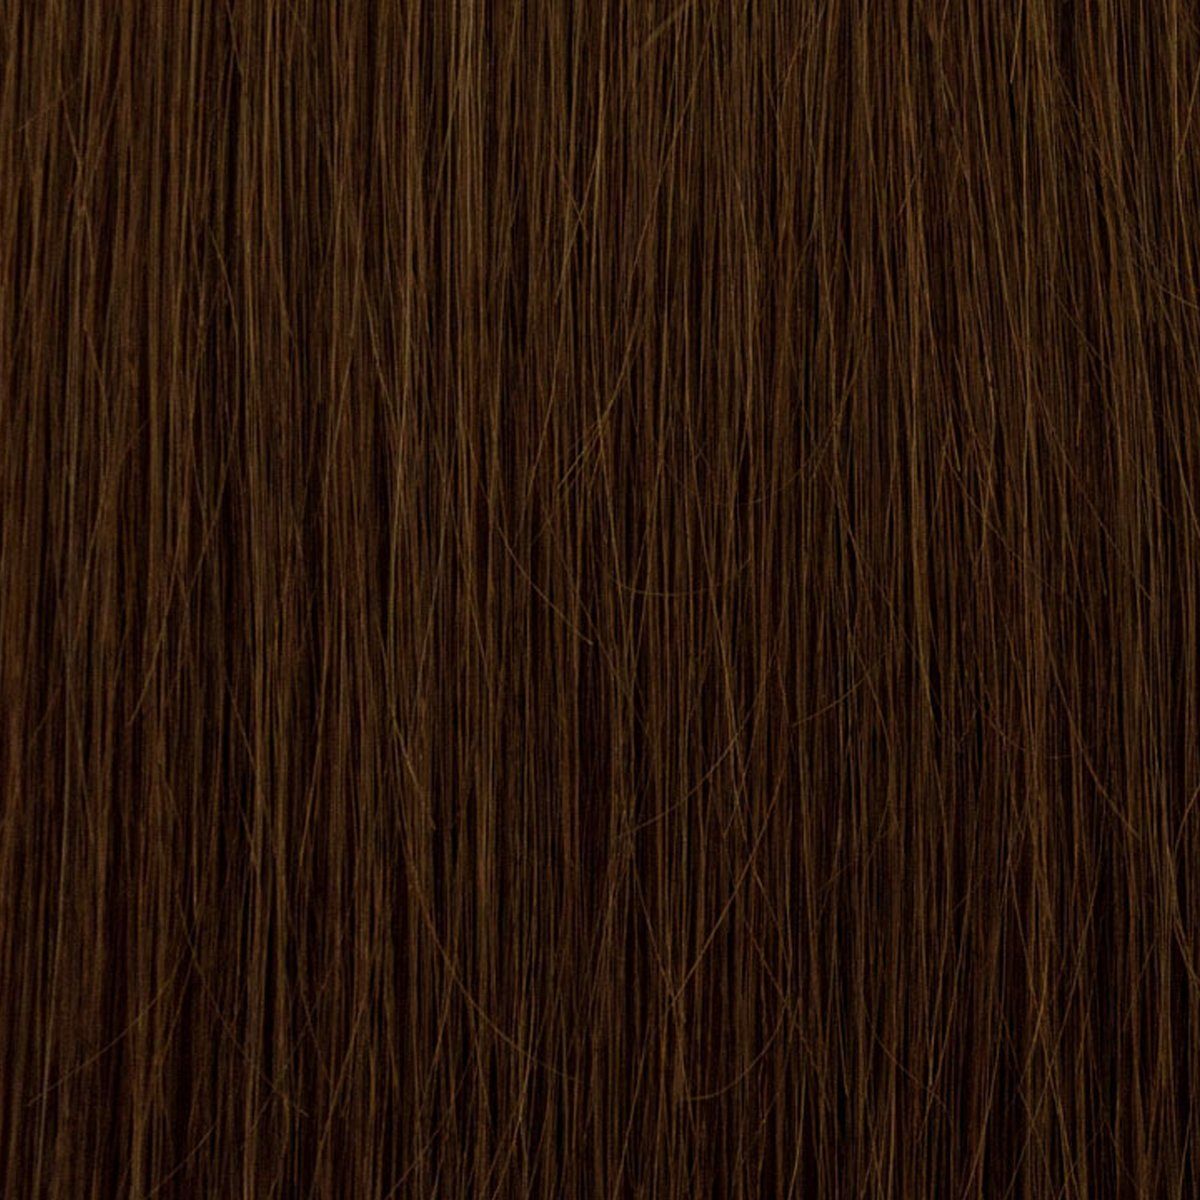 EH - Haarverlängerung Echthaar-Extension Clip-in-Extensions, Echthaar 7-teiliges Set 60 cm mit 130 Gramm, Echthaar 06 haselnussbraun